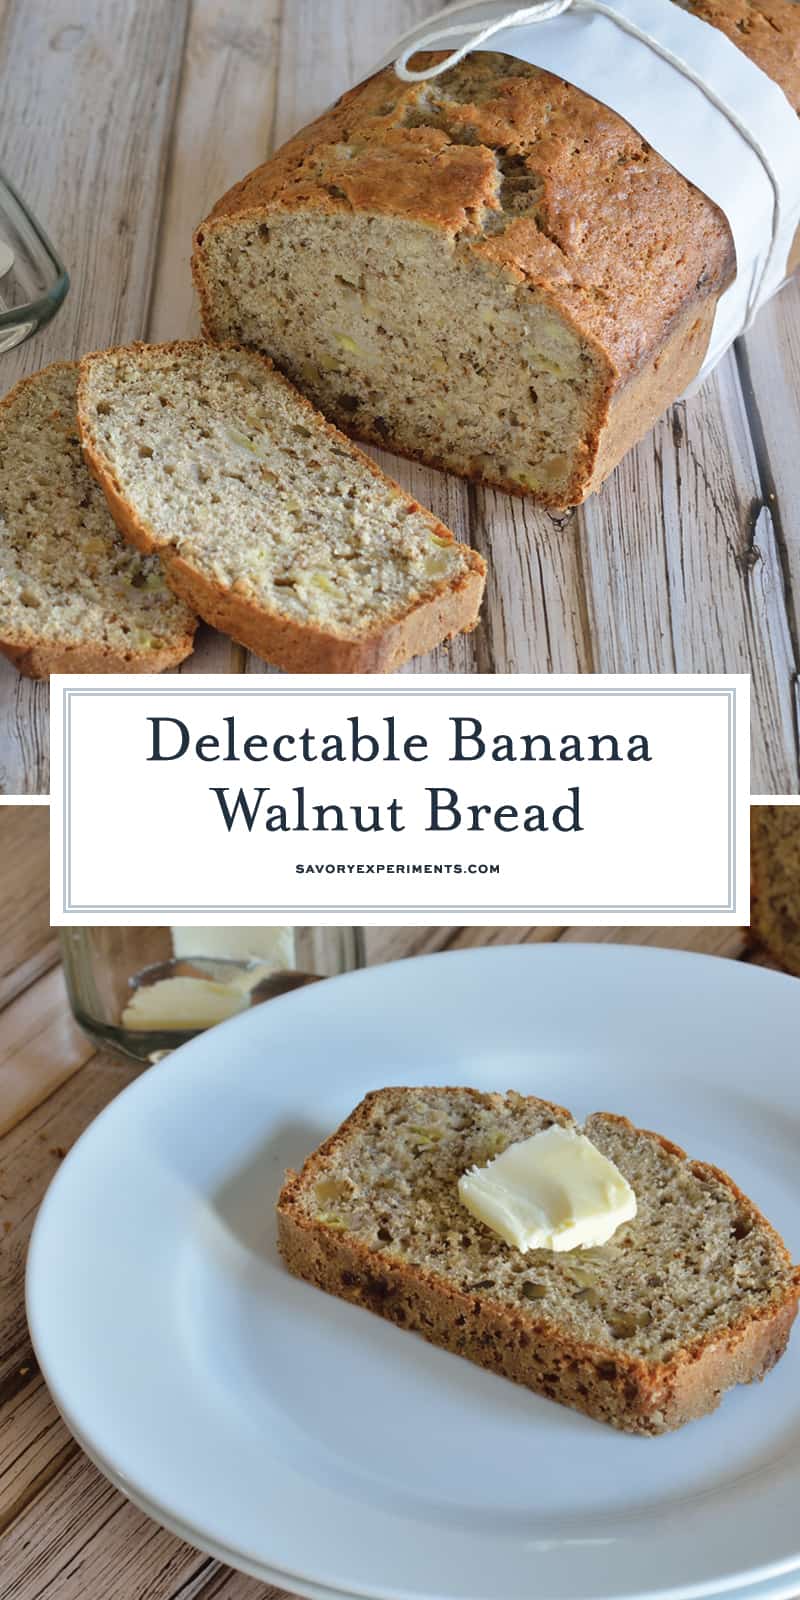 Banana Walnut Bread - The Best Banana Bread Recipe!